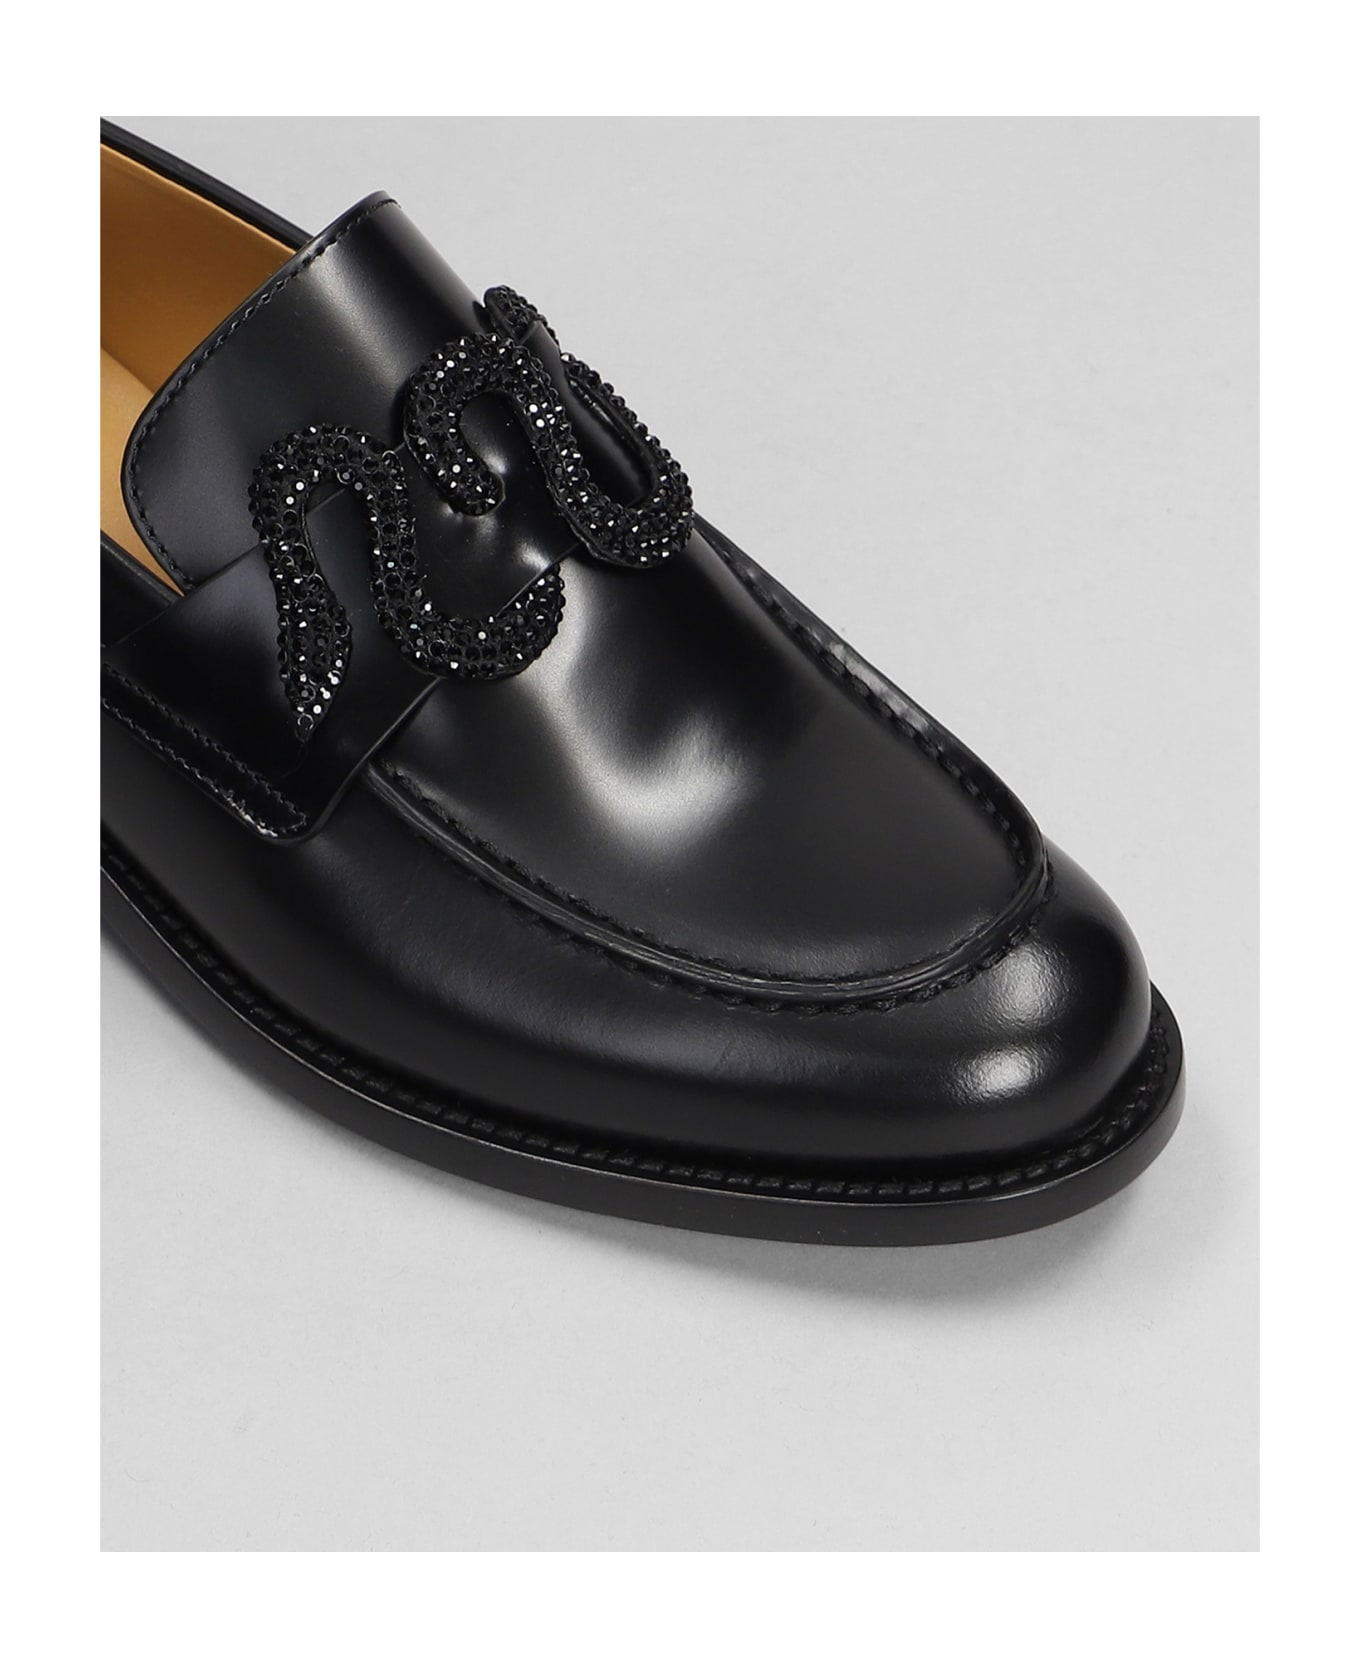 René Caovilla Morgana Loafers In Black Leather - black